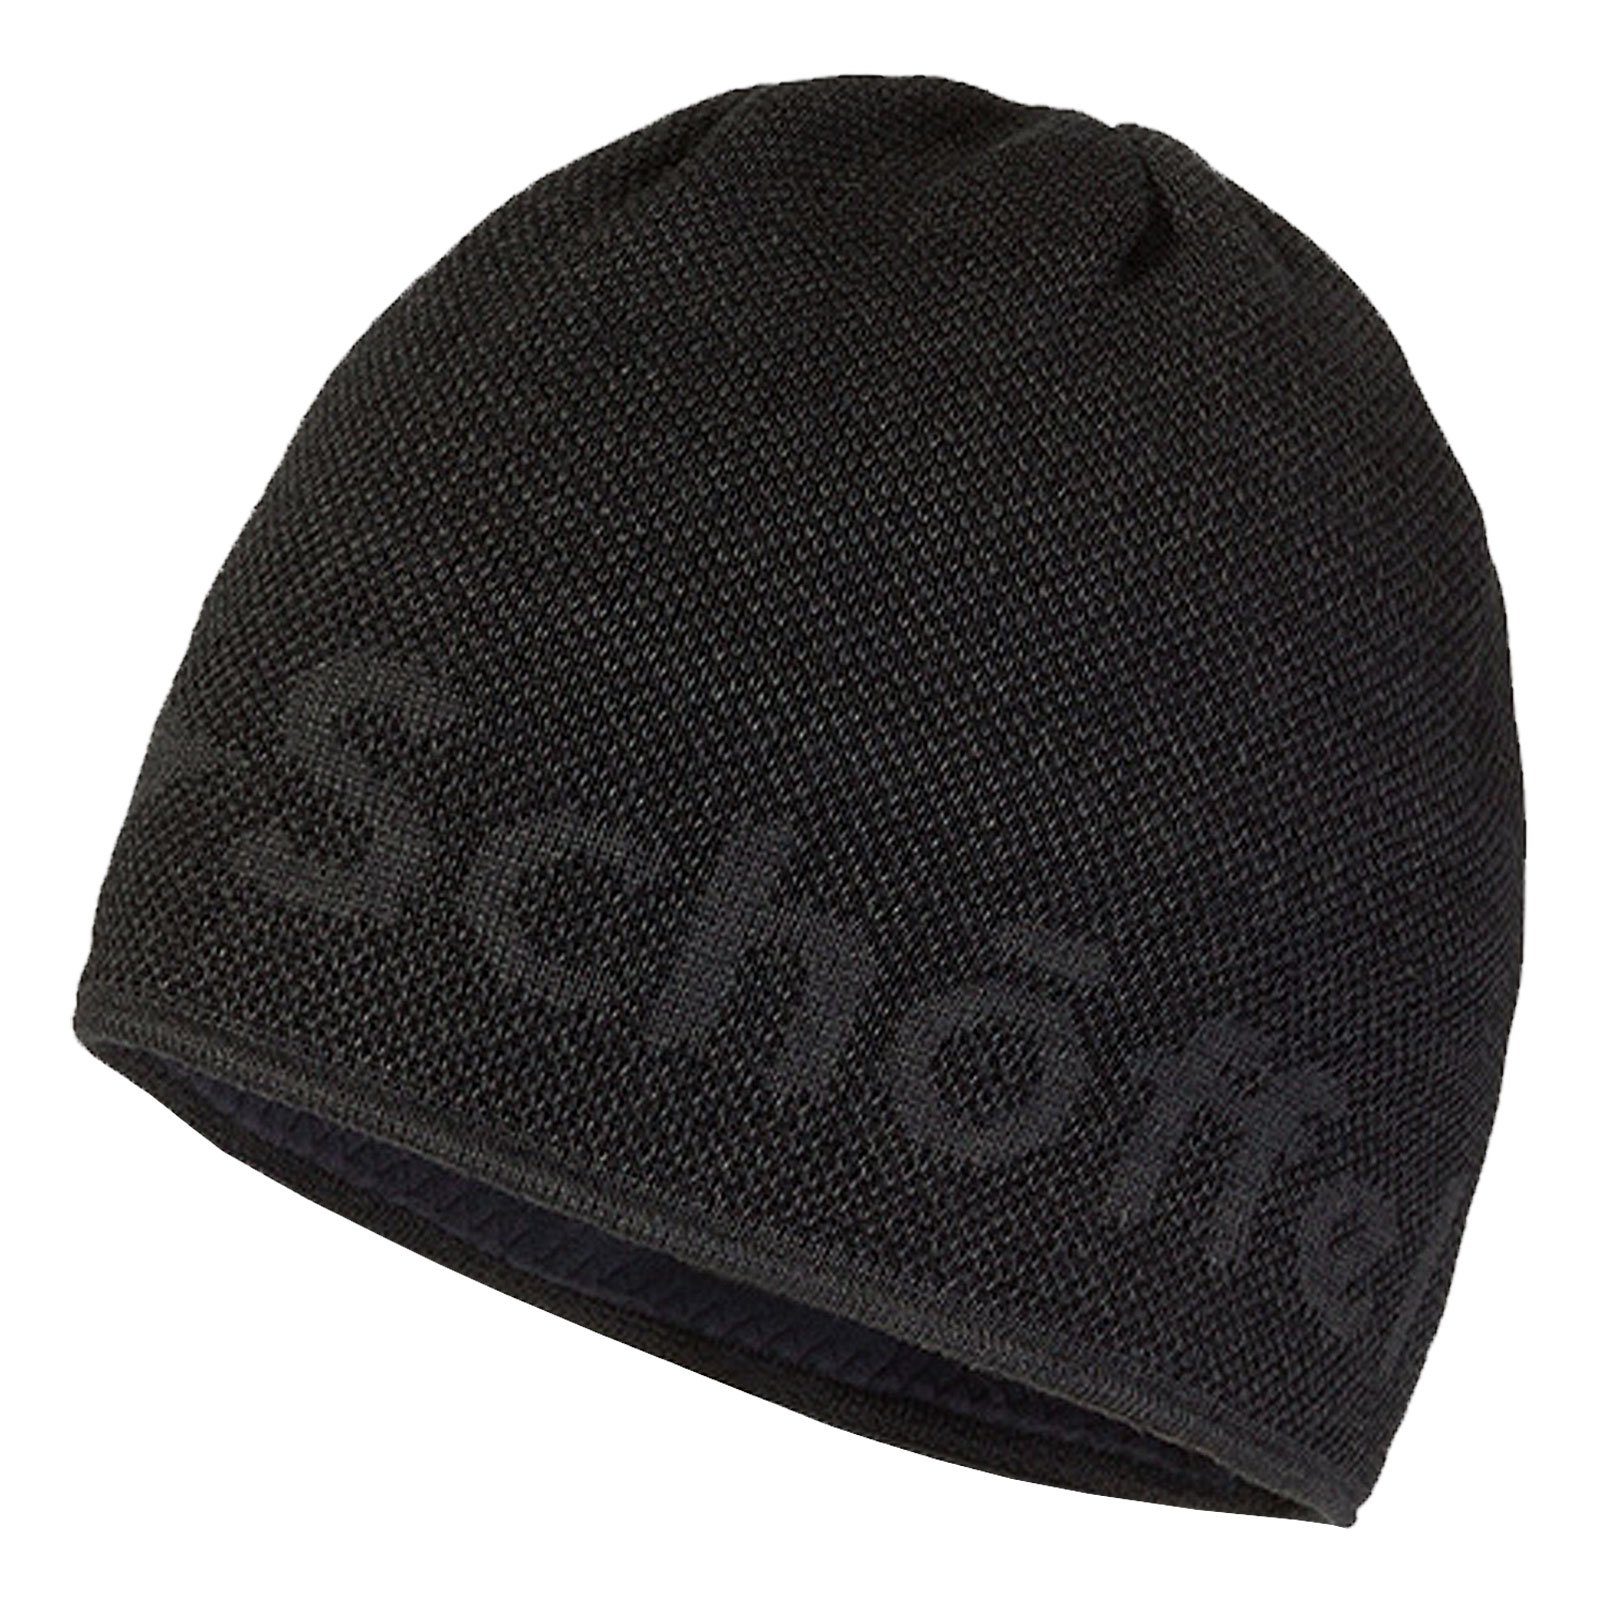 Schoeffel Schöffel Strickmütze Knitted Hat Klinovec mit eingestricktem Schöffel-Logo 9830 asphalt